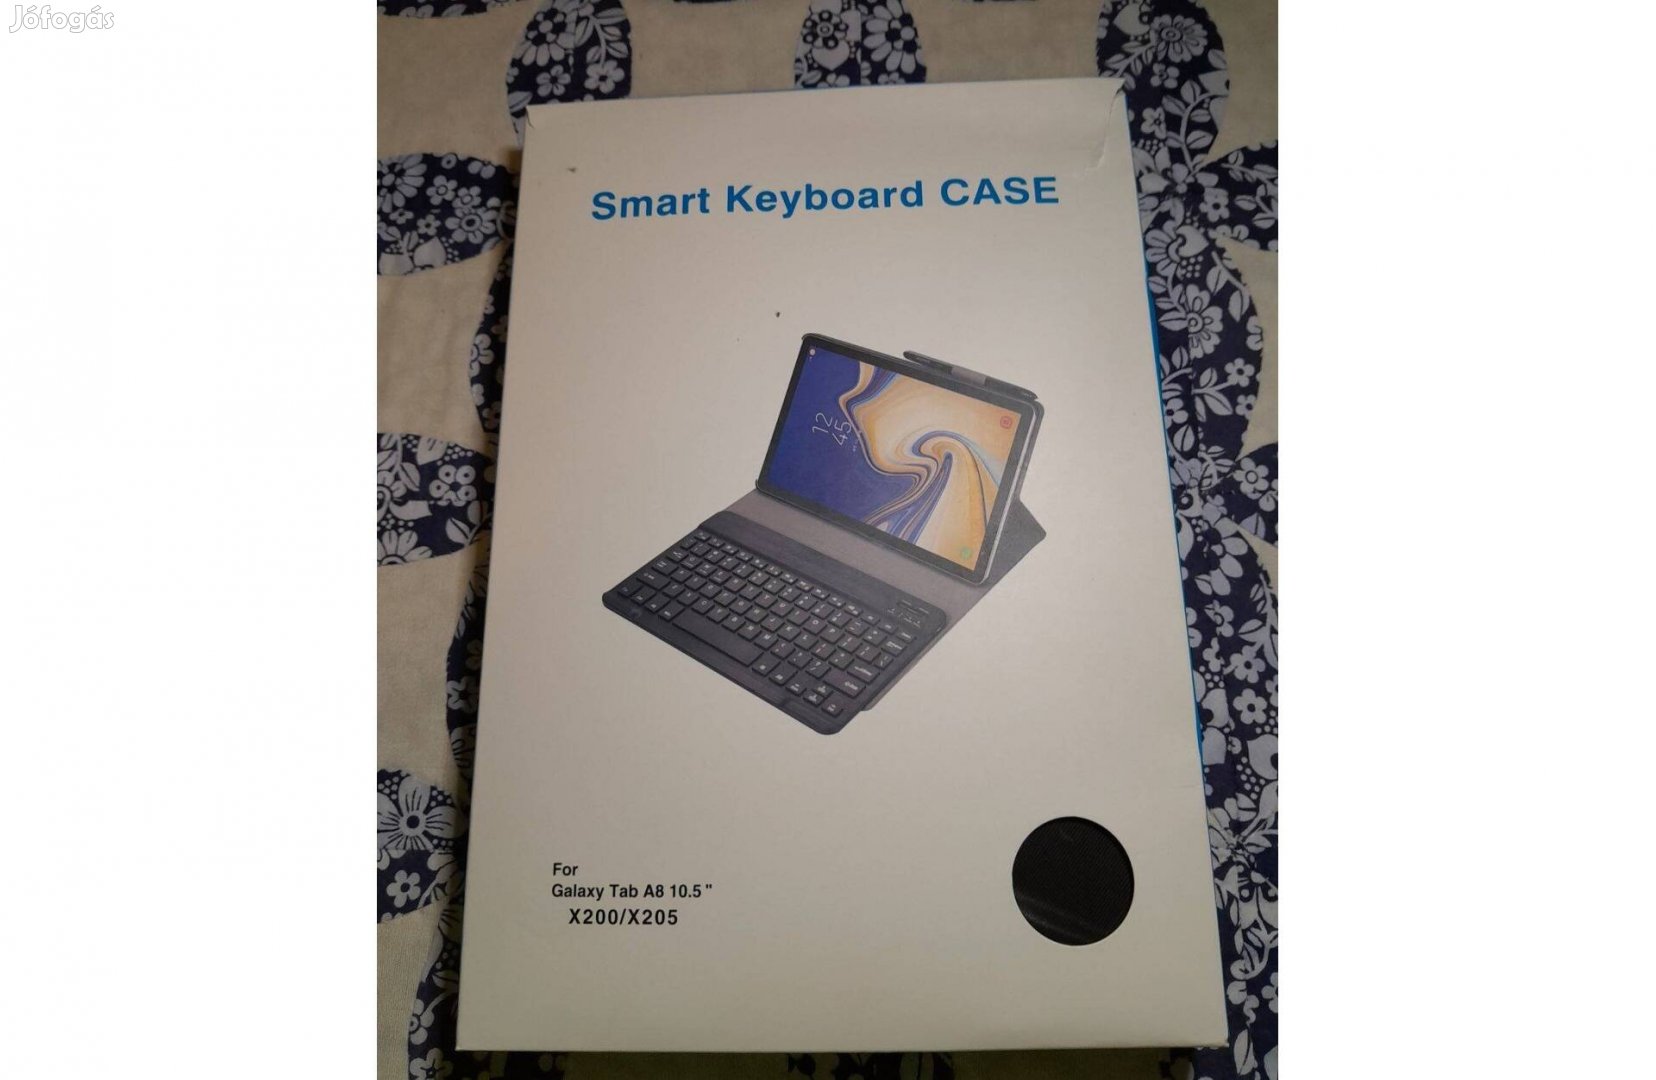 Smart keyboard case